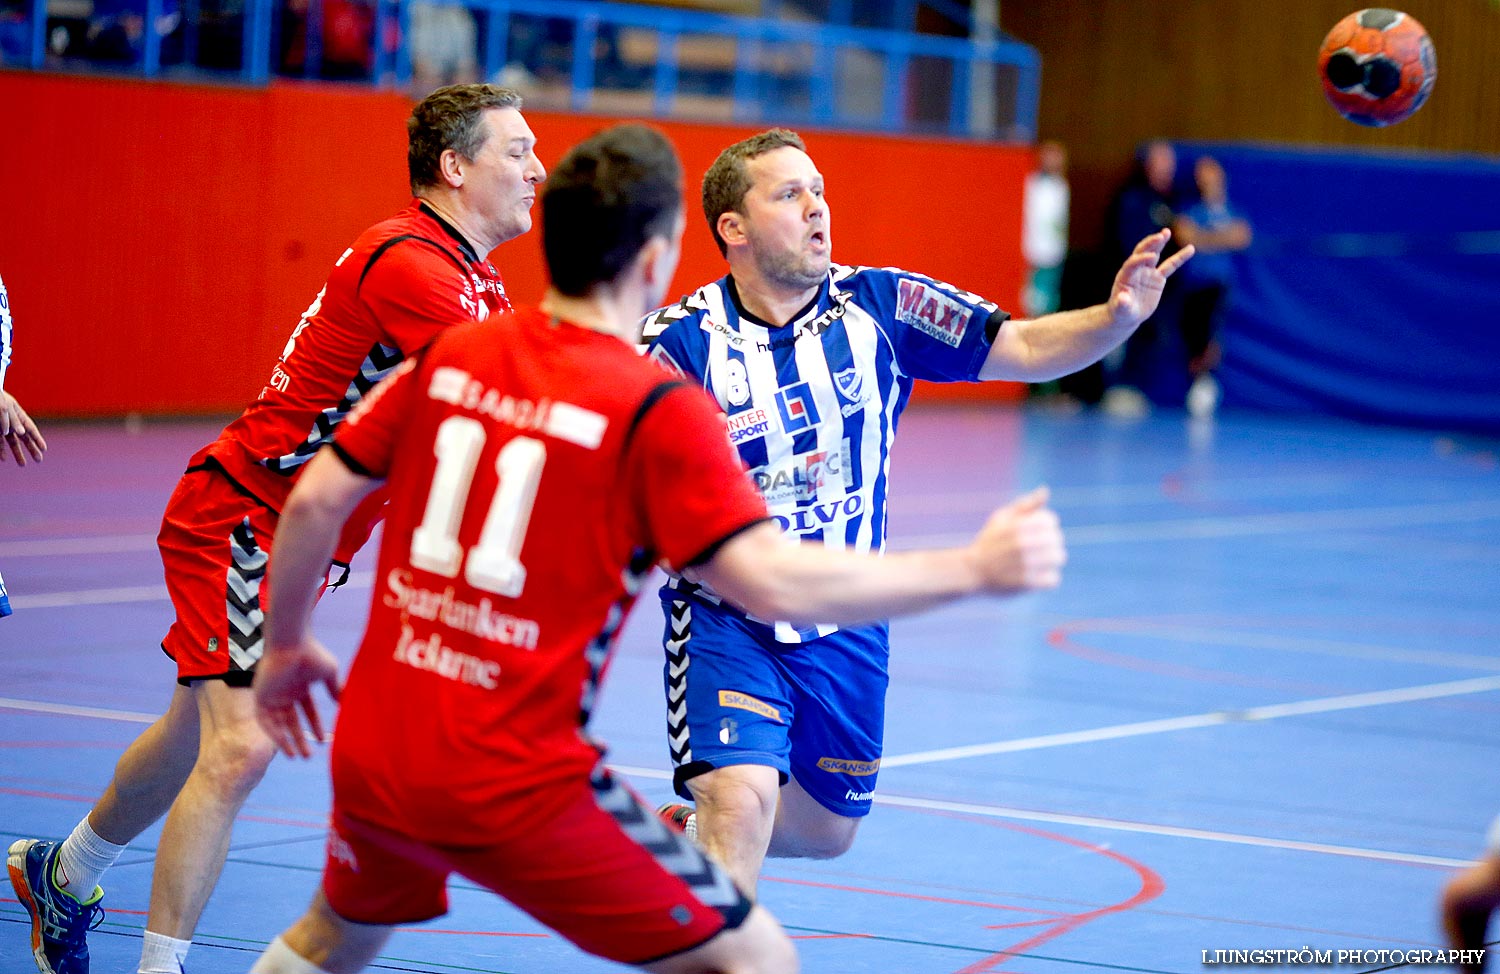 Trim-SM Herrar IFK Skövde HK-Eskilstuna Guif,herr,Arena Skövde,Skövde,Sverige,Handboll,,2014,87144